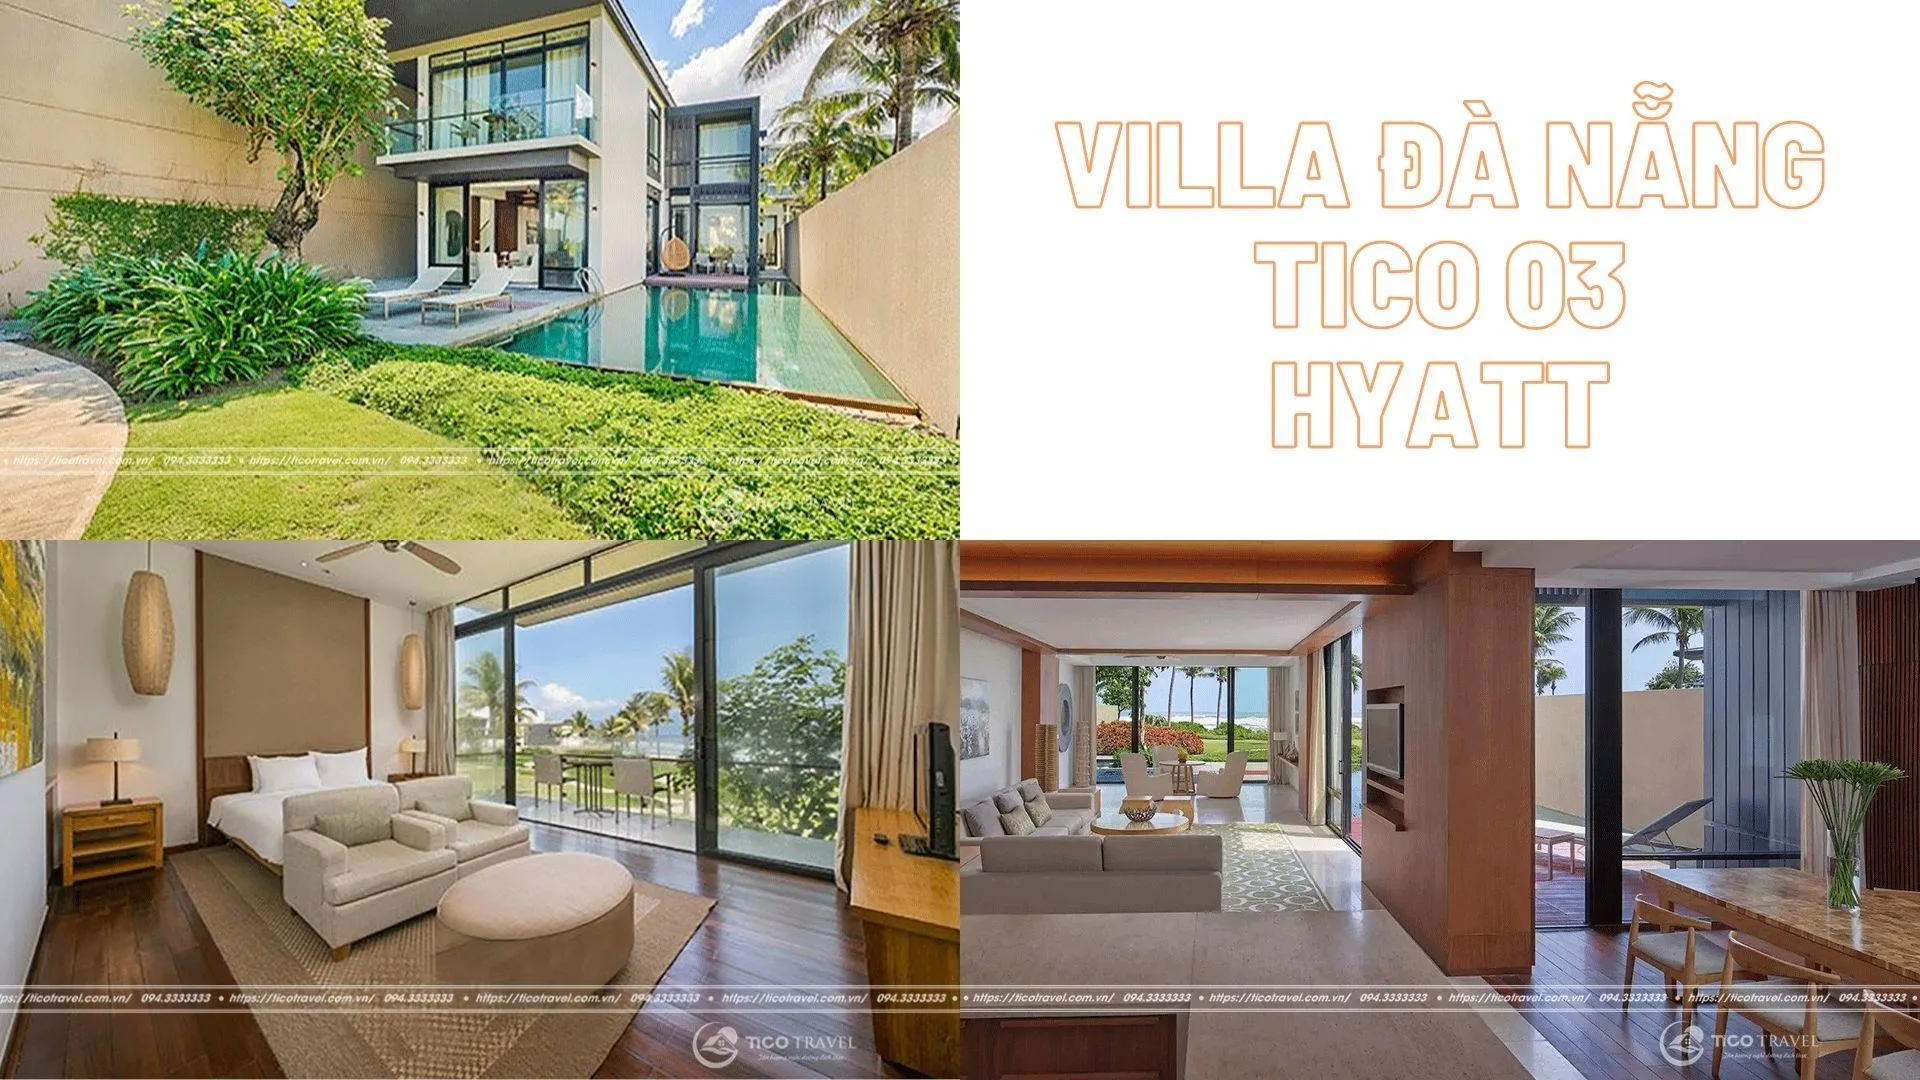 Villa Đà Nẵng Tico 03 - Hyatt